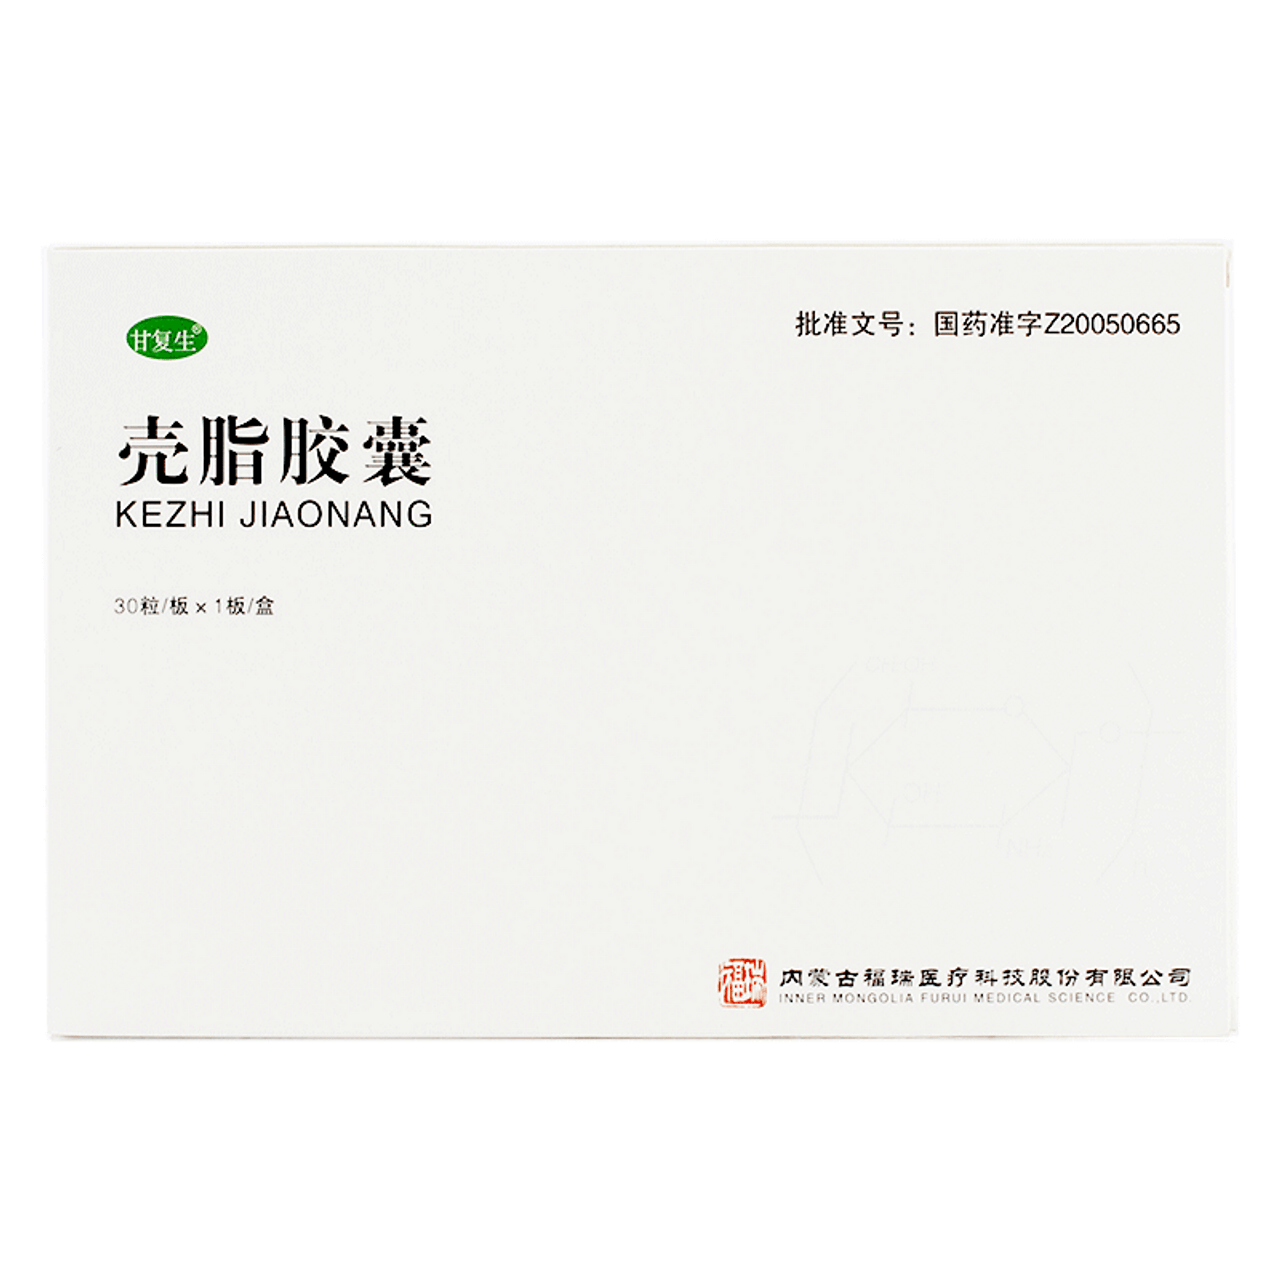 China Herb. GANFUSHENG KEZHI JIAONANG For Fatty Liver. Kezhi Jiaonang. Ke Zhi Jiao Nang. Ke Zhi Capsules. Ke Zhi Jiao Nang.